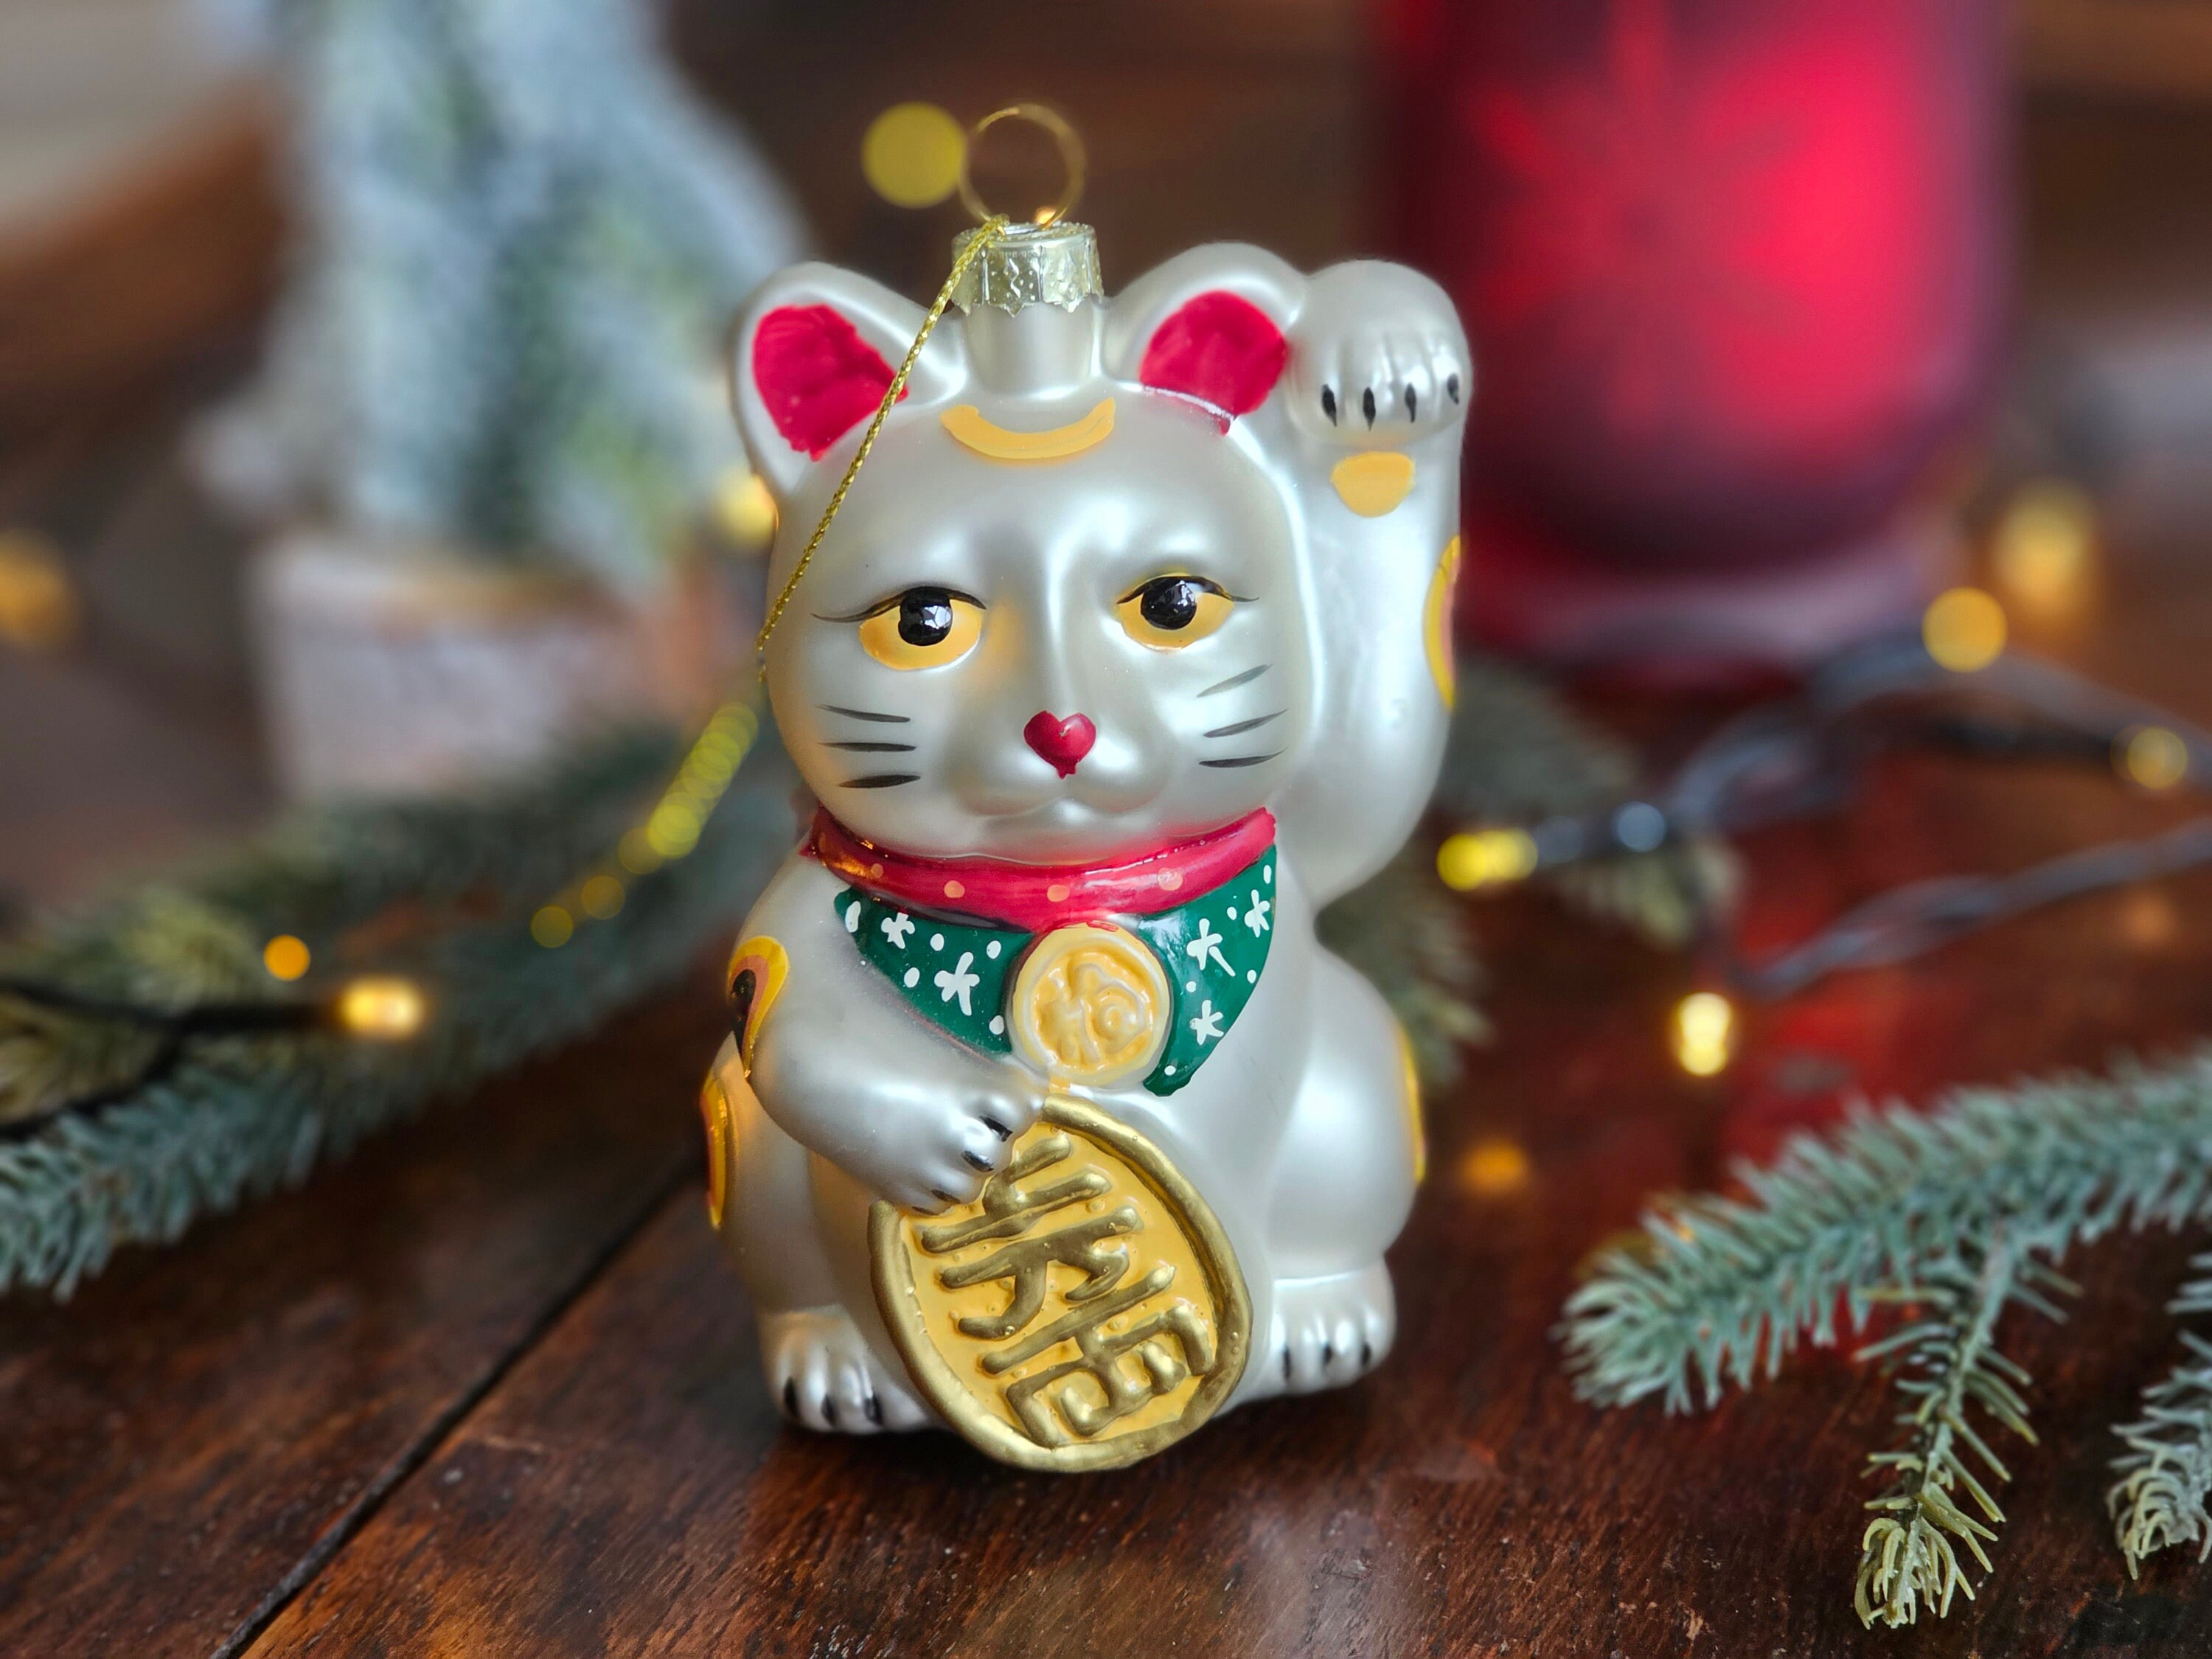  World of Wonders Mittelfinger Maneki Neko winkende Katze Figur, Glückskatzen und Rauchladen Zubehör, 420 Geschenke für Steiner